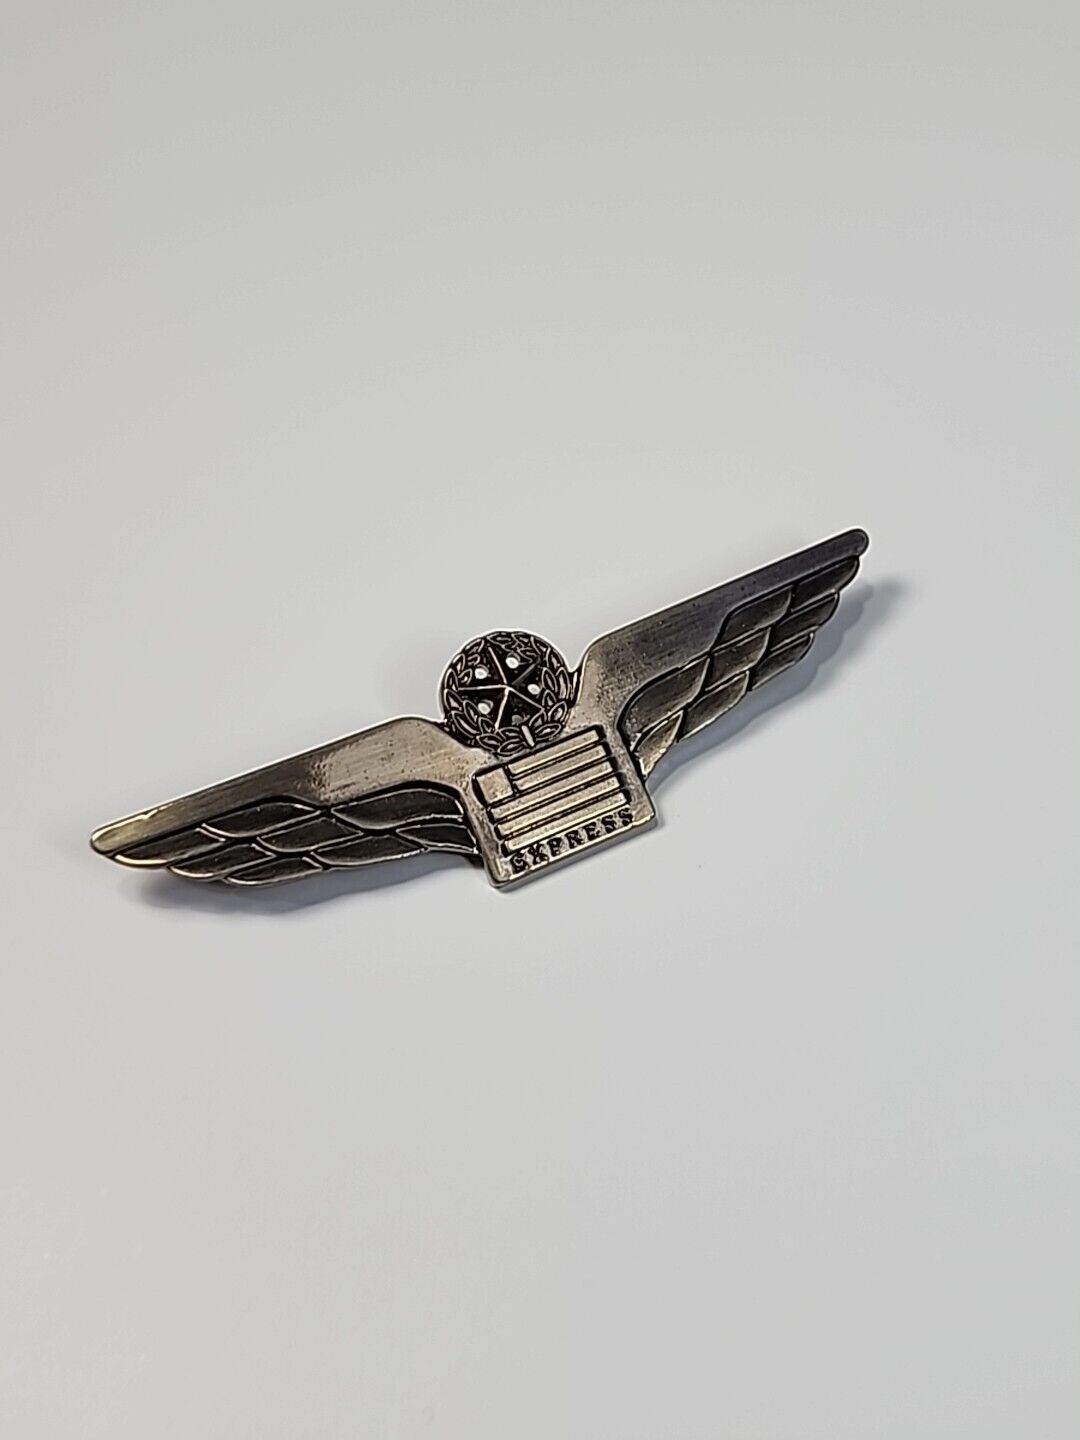 U.S. Airways Express Pilot's Wings Badge Pin Star & Laurel Wreath Vintage